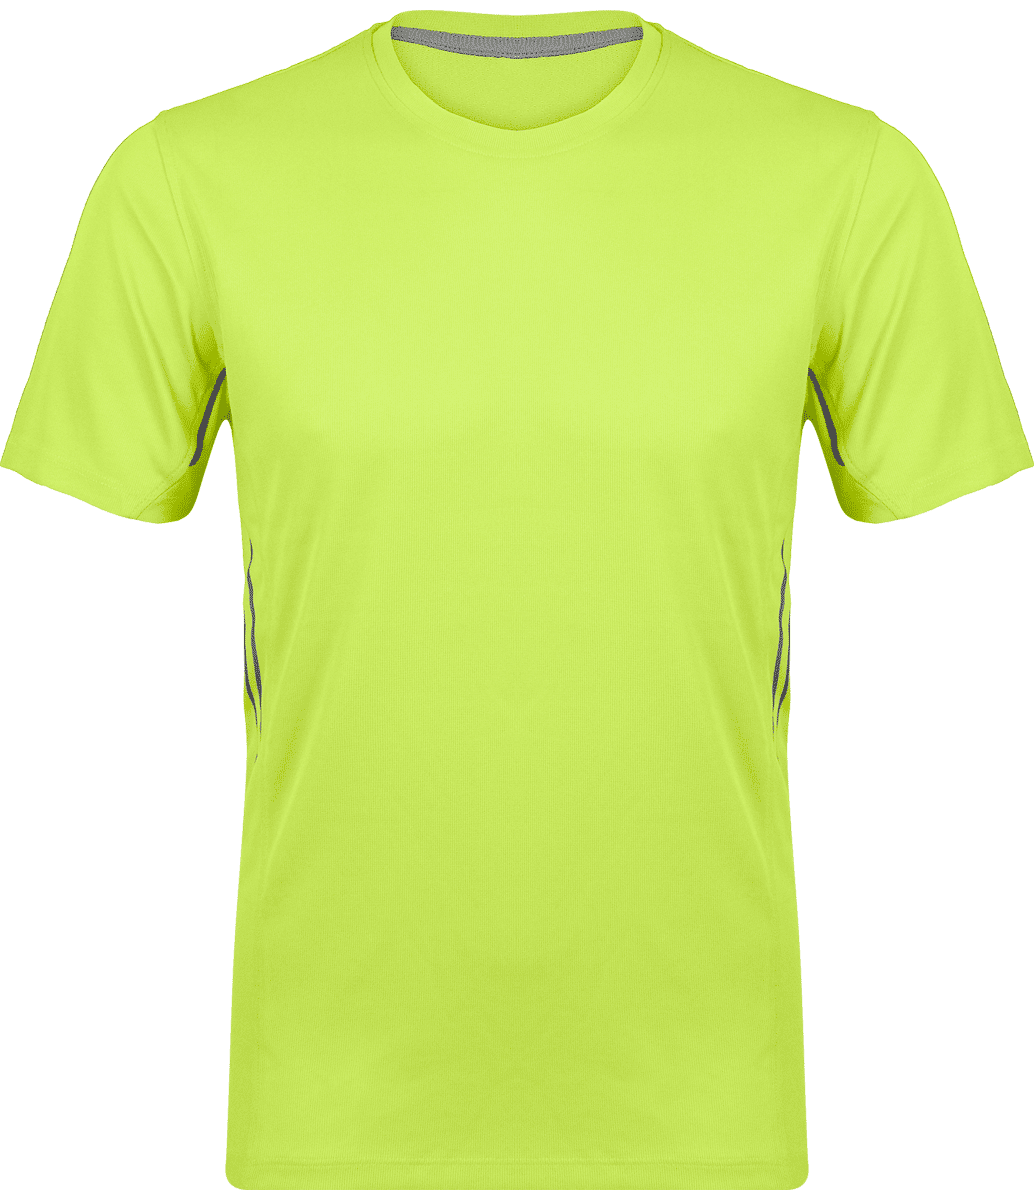 Camiseta Hombre Deporte | Ligera Y Transpirable | Bordado Y Estampado Lime / Silver